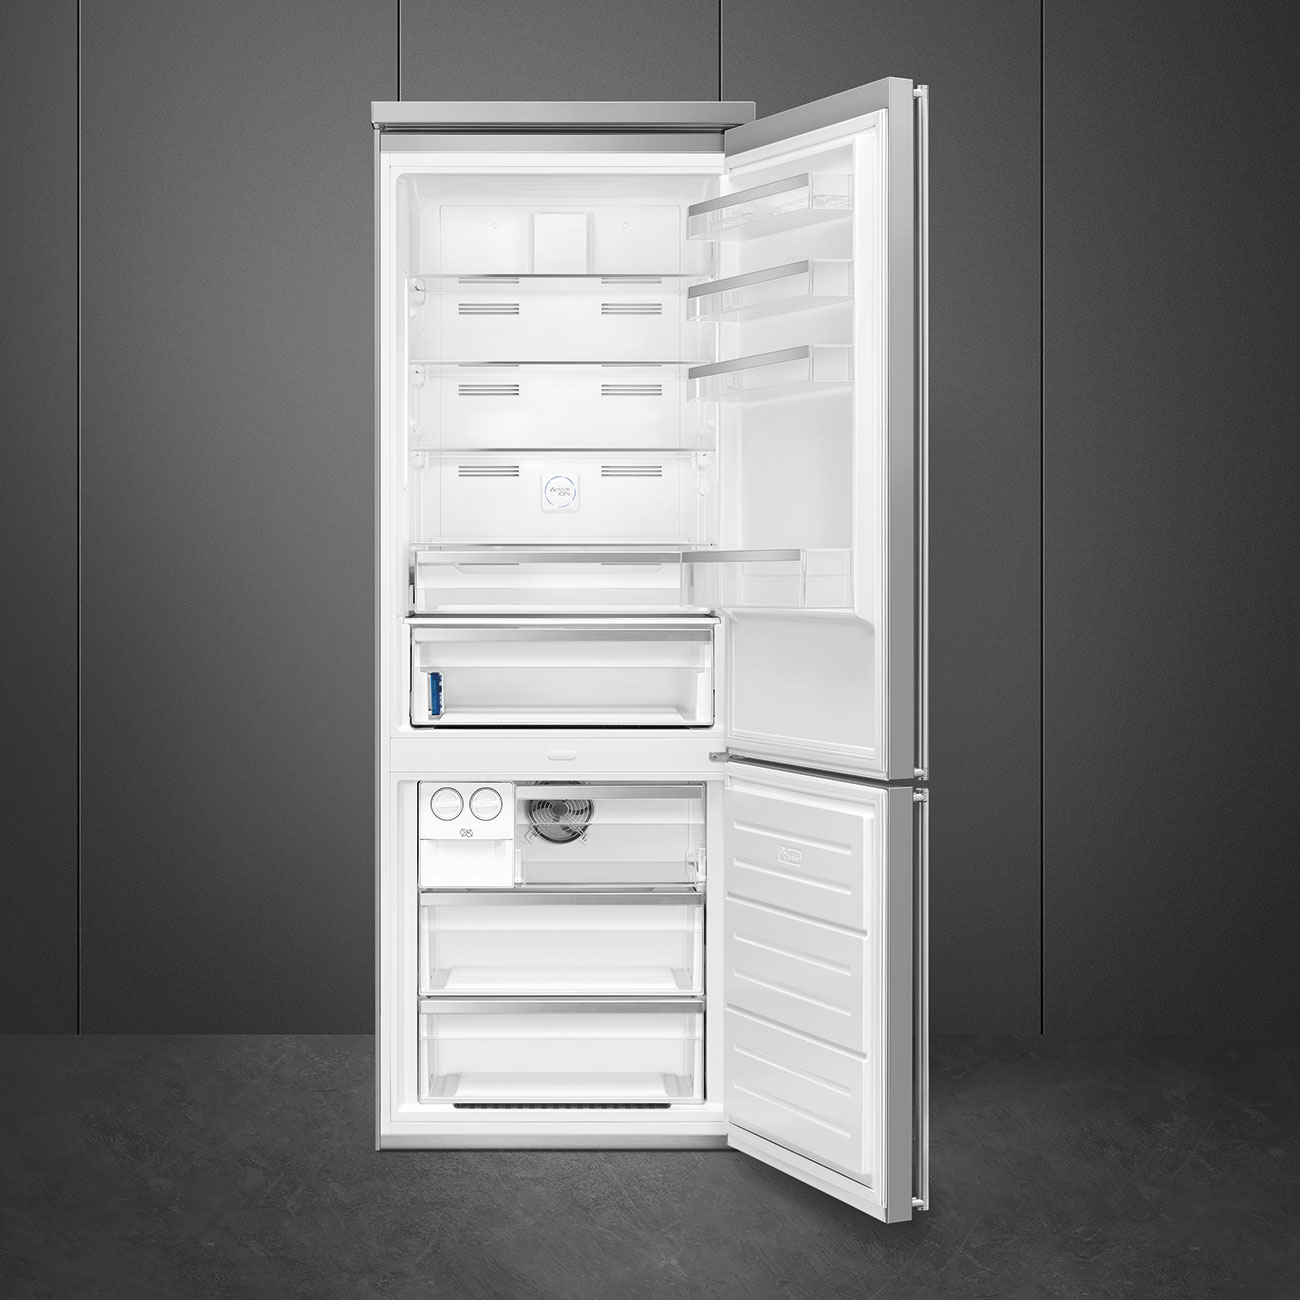 Koel-vriescombinatie Vrijstaand koelkast - Smeg_2